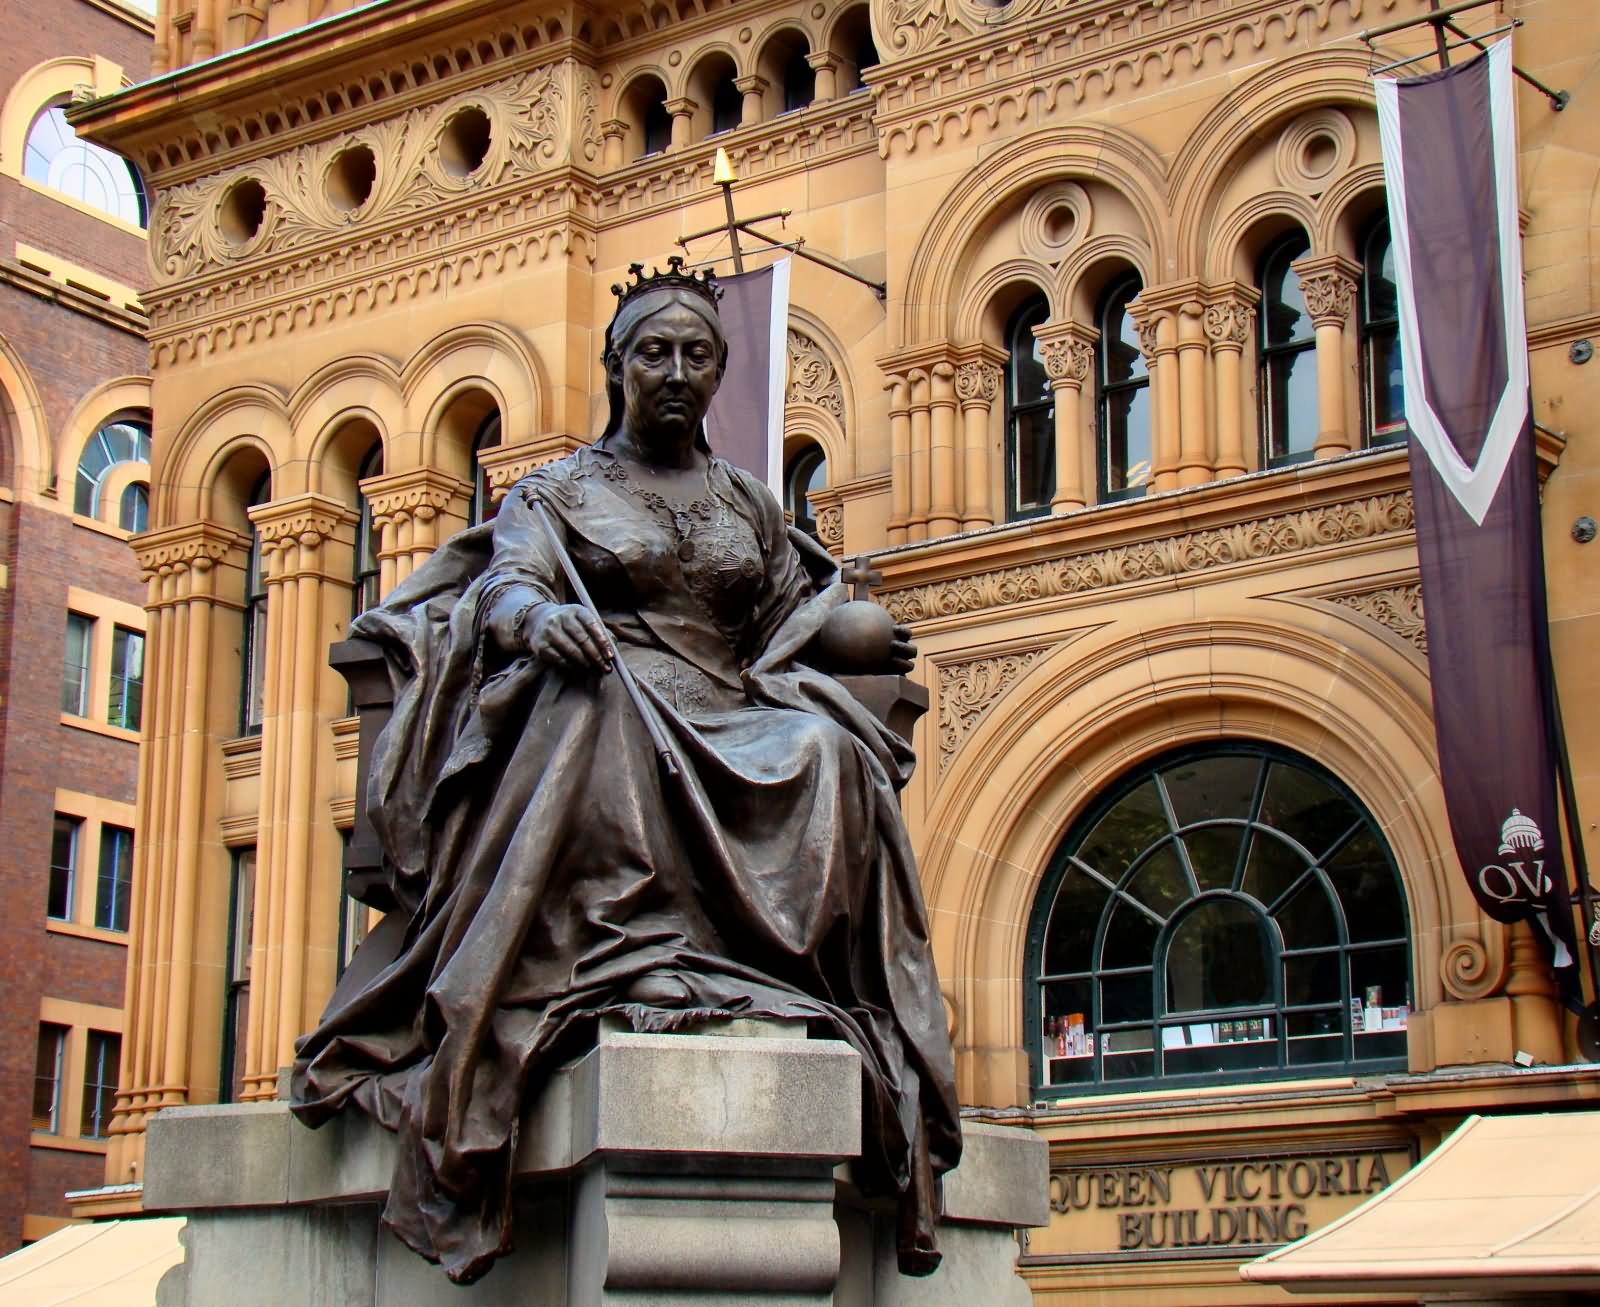 Queen Victoria Statue In Front Of Queen Victoria Building